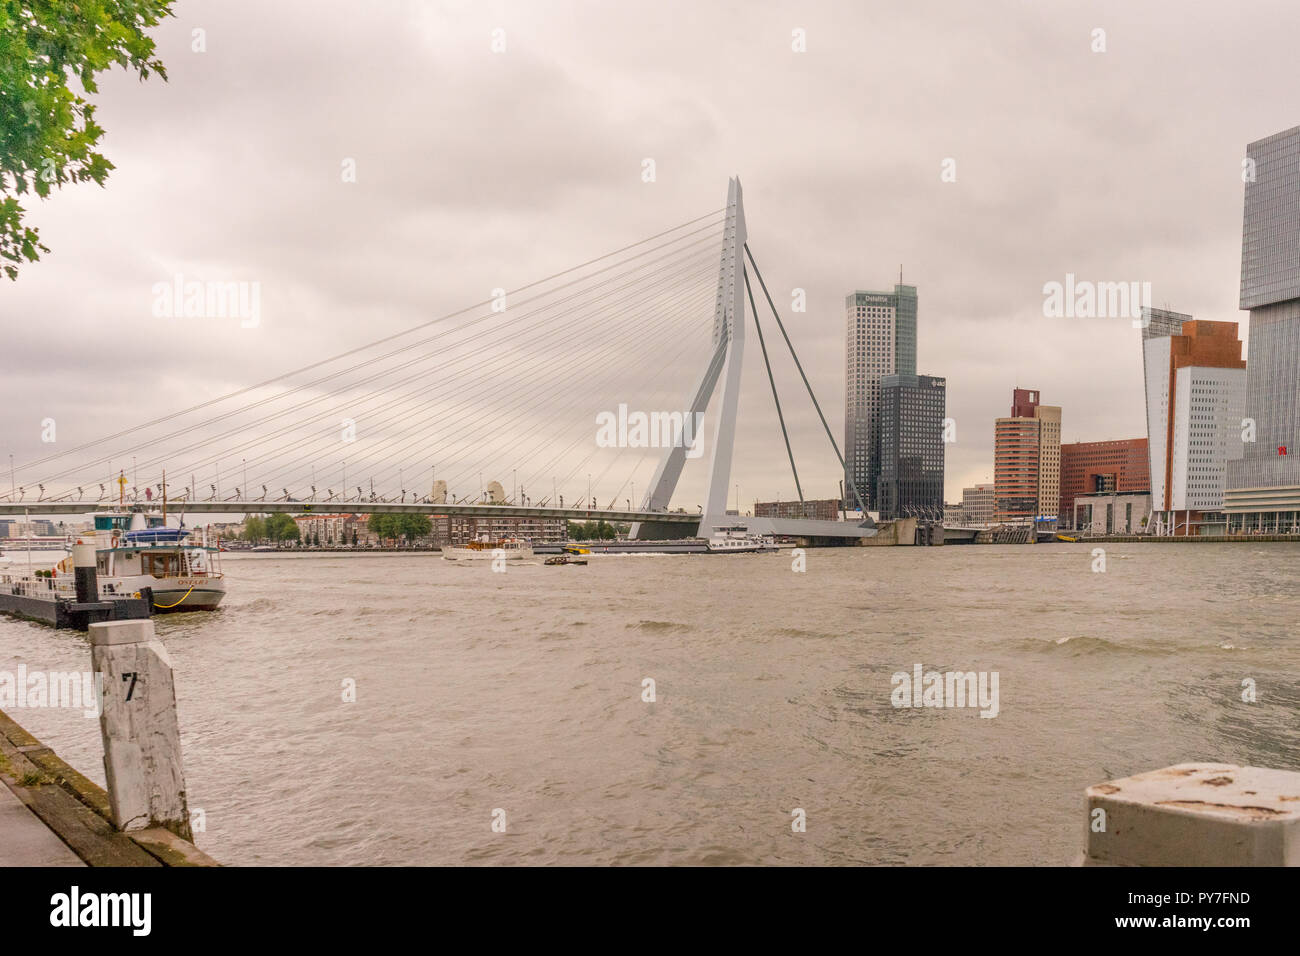 Rotterdam, Paesi Bassi - 16 July, 2016: La Deloitte edificio si affaccia sul ponte Erasmus. La 284m lungo il ponte è stato progettato da Ben van Berkel (UNSt Foto Stock